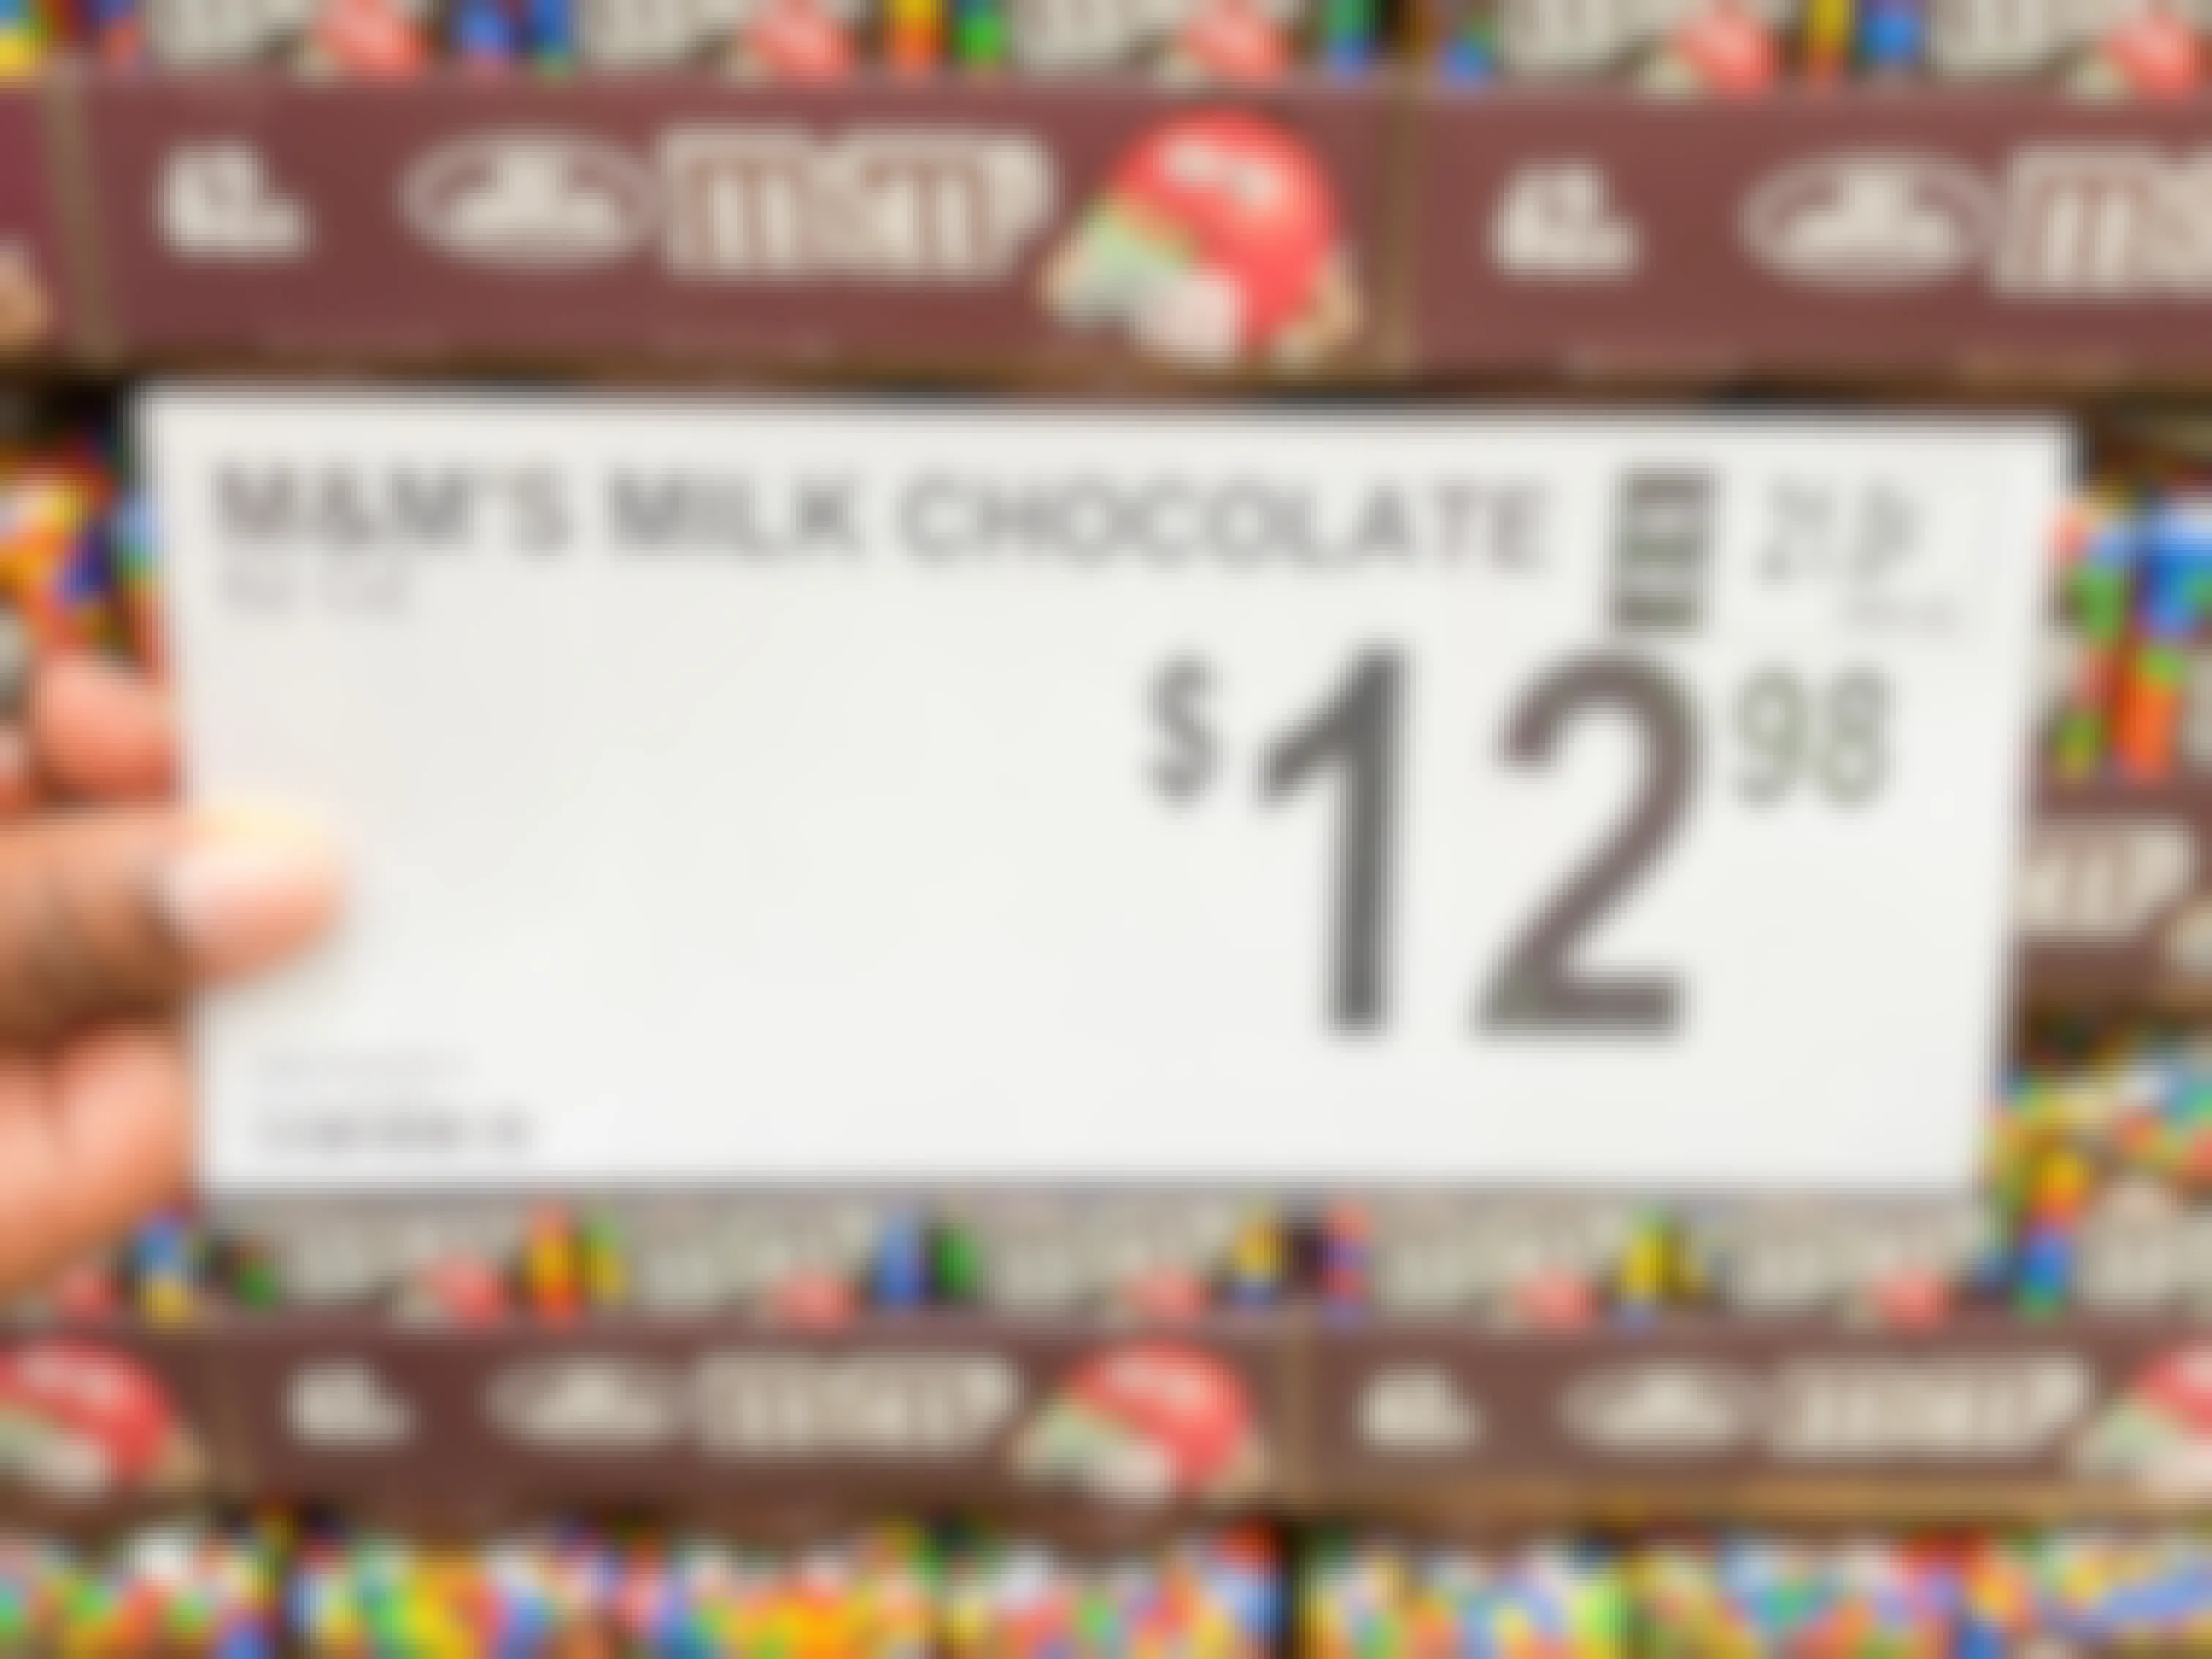 M&Ms Milk Chocolate price tag at Sam's Club